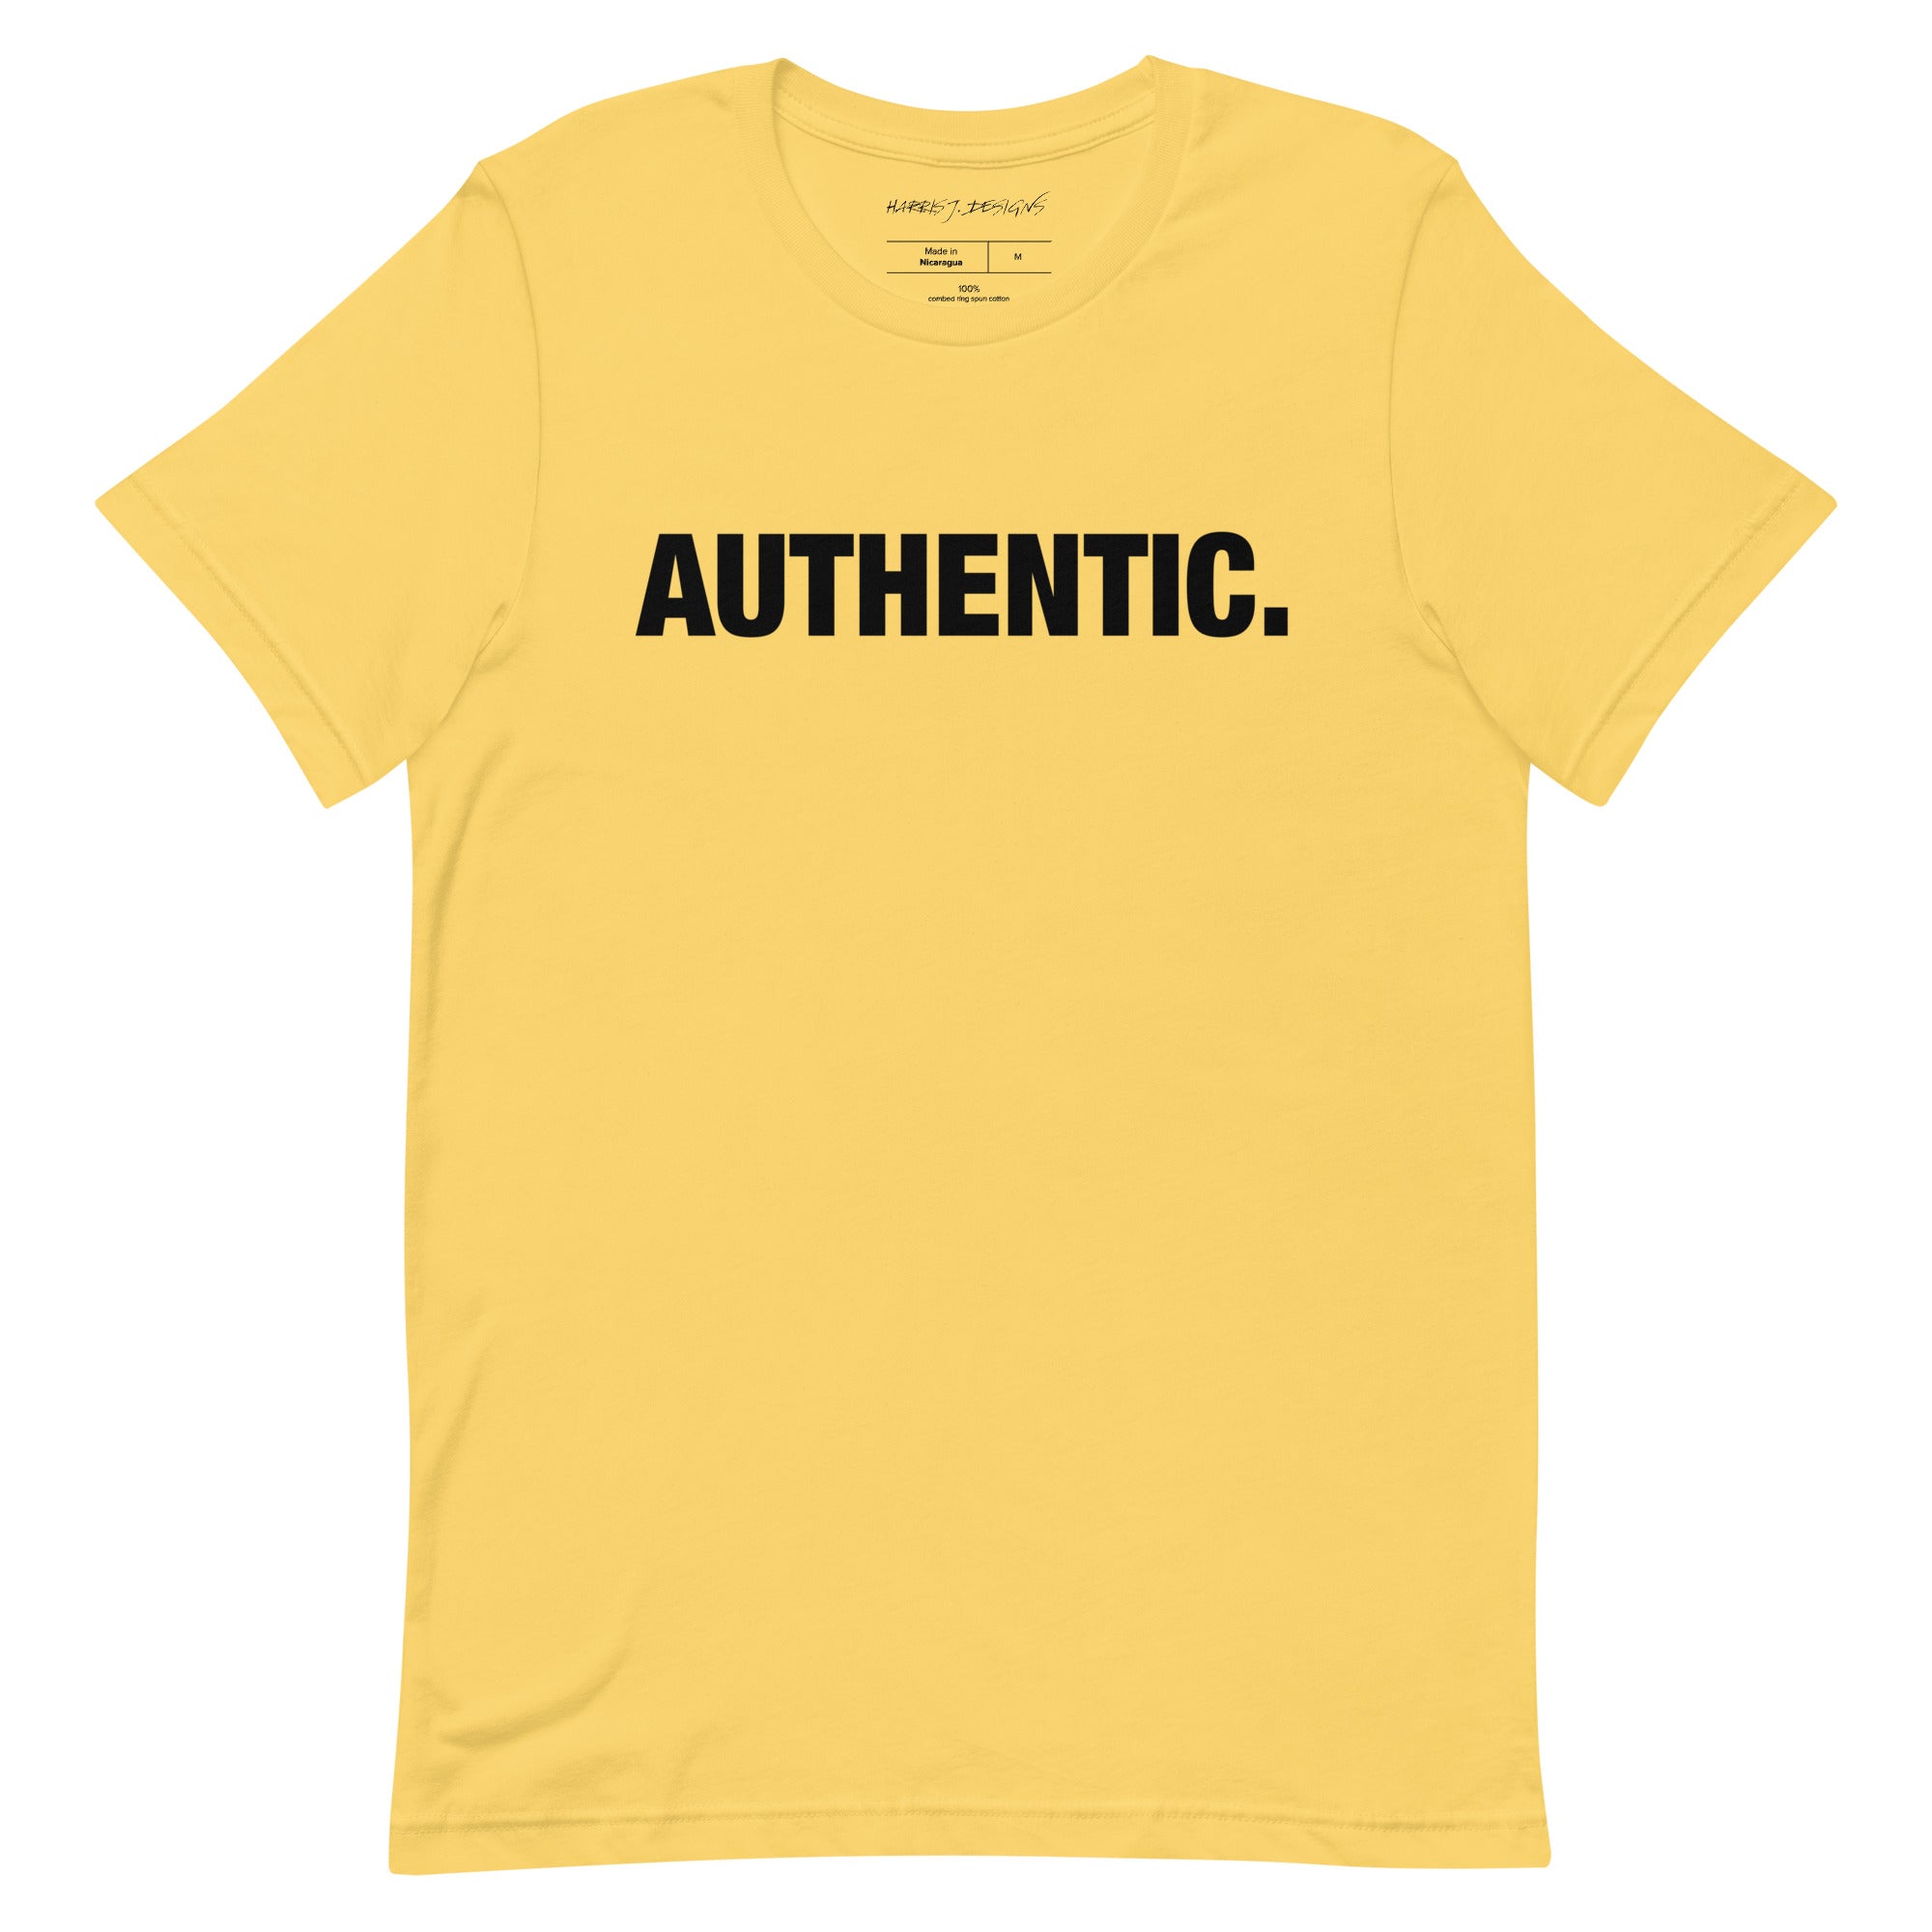 Authentic.  t-shirt